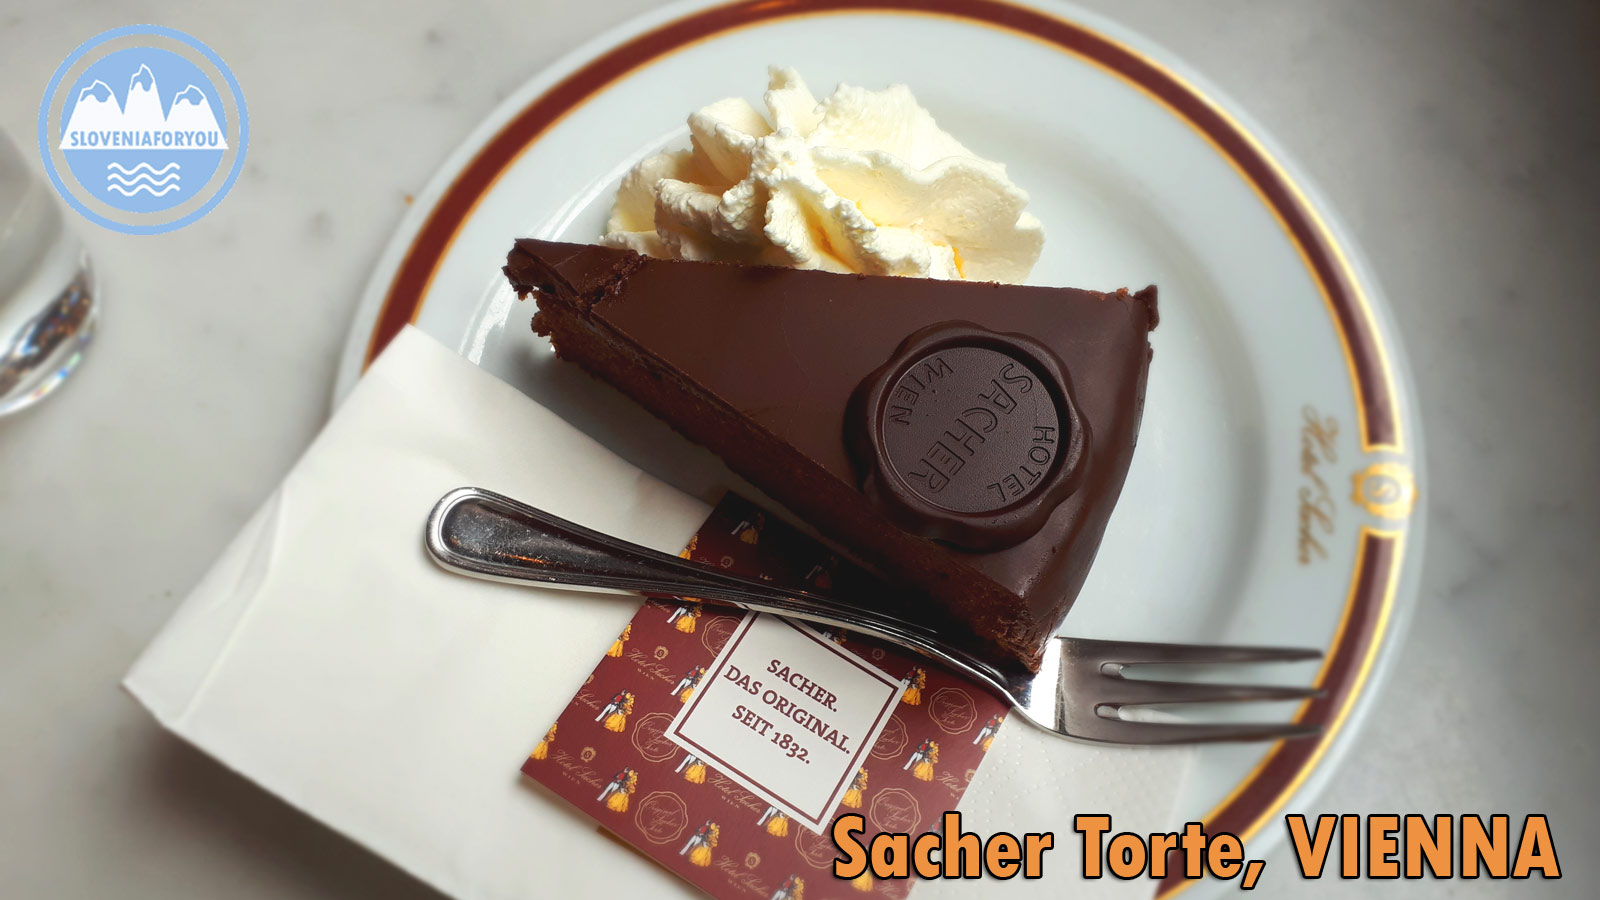 Famous Sacher Torte Cake, Vienna, Sloveniaforyou